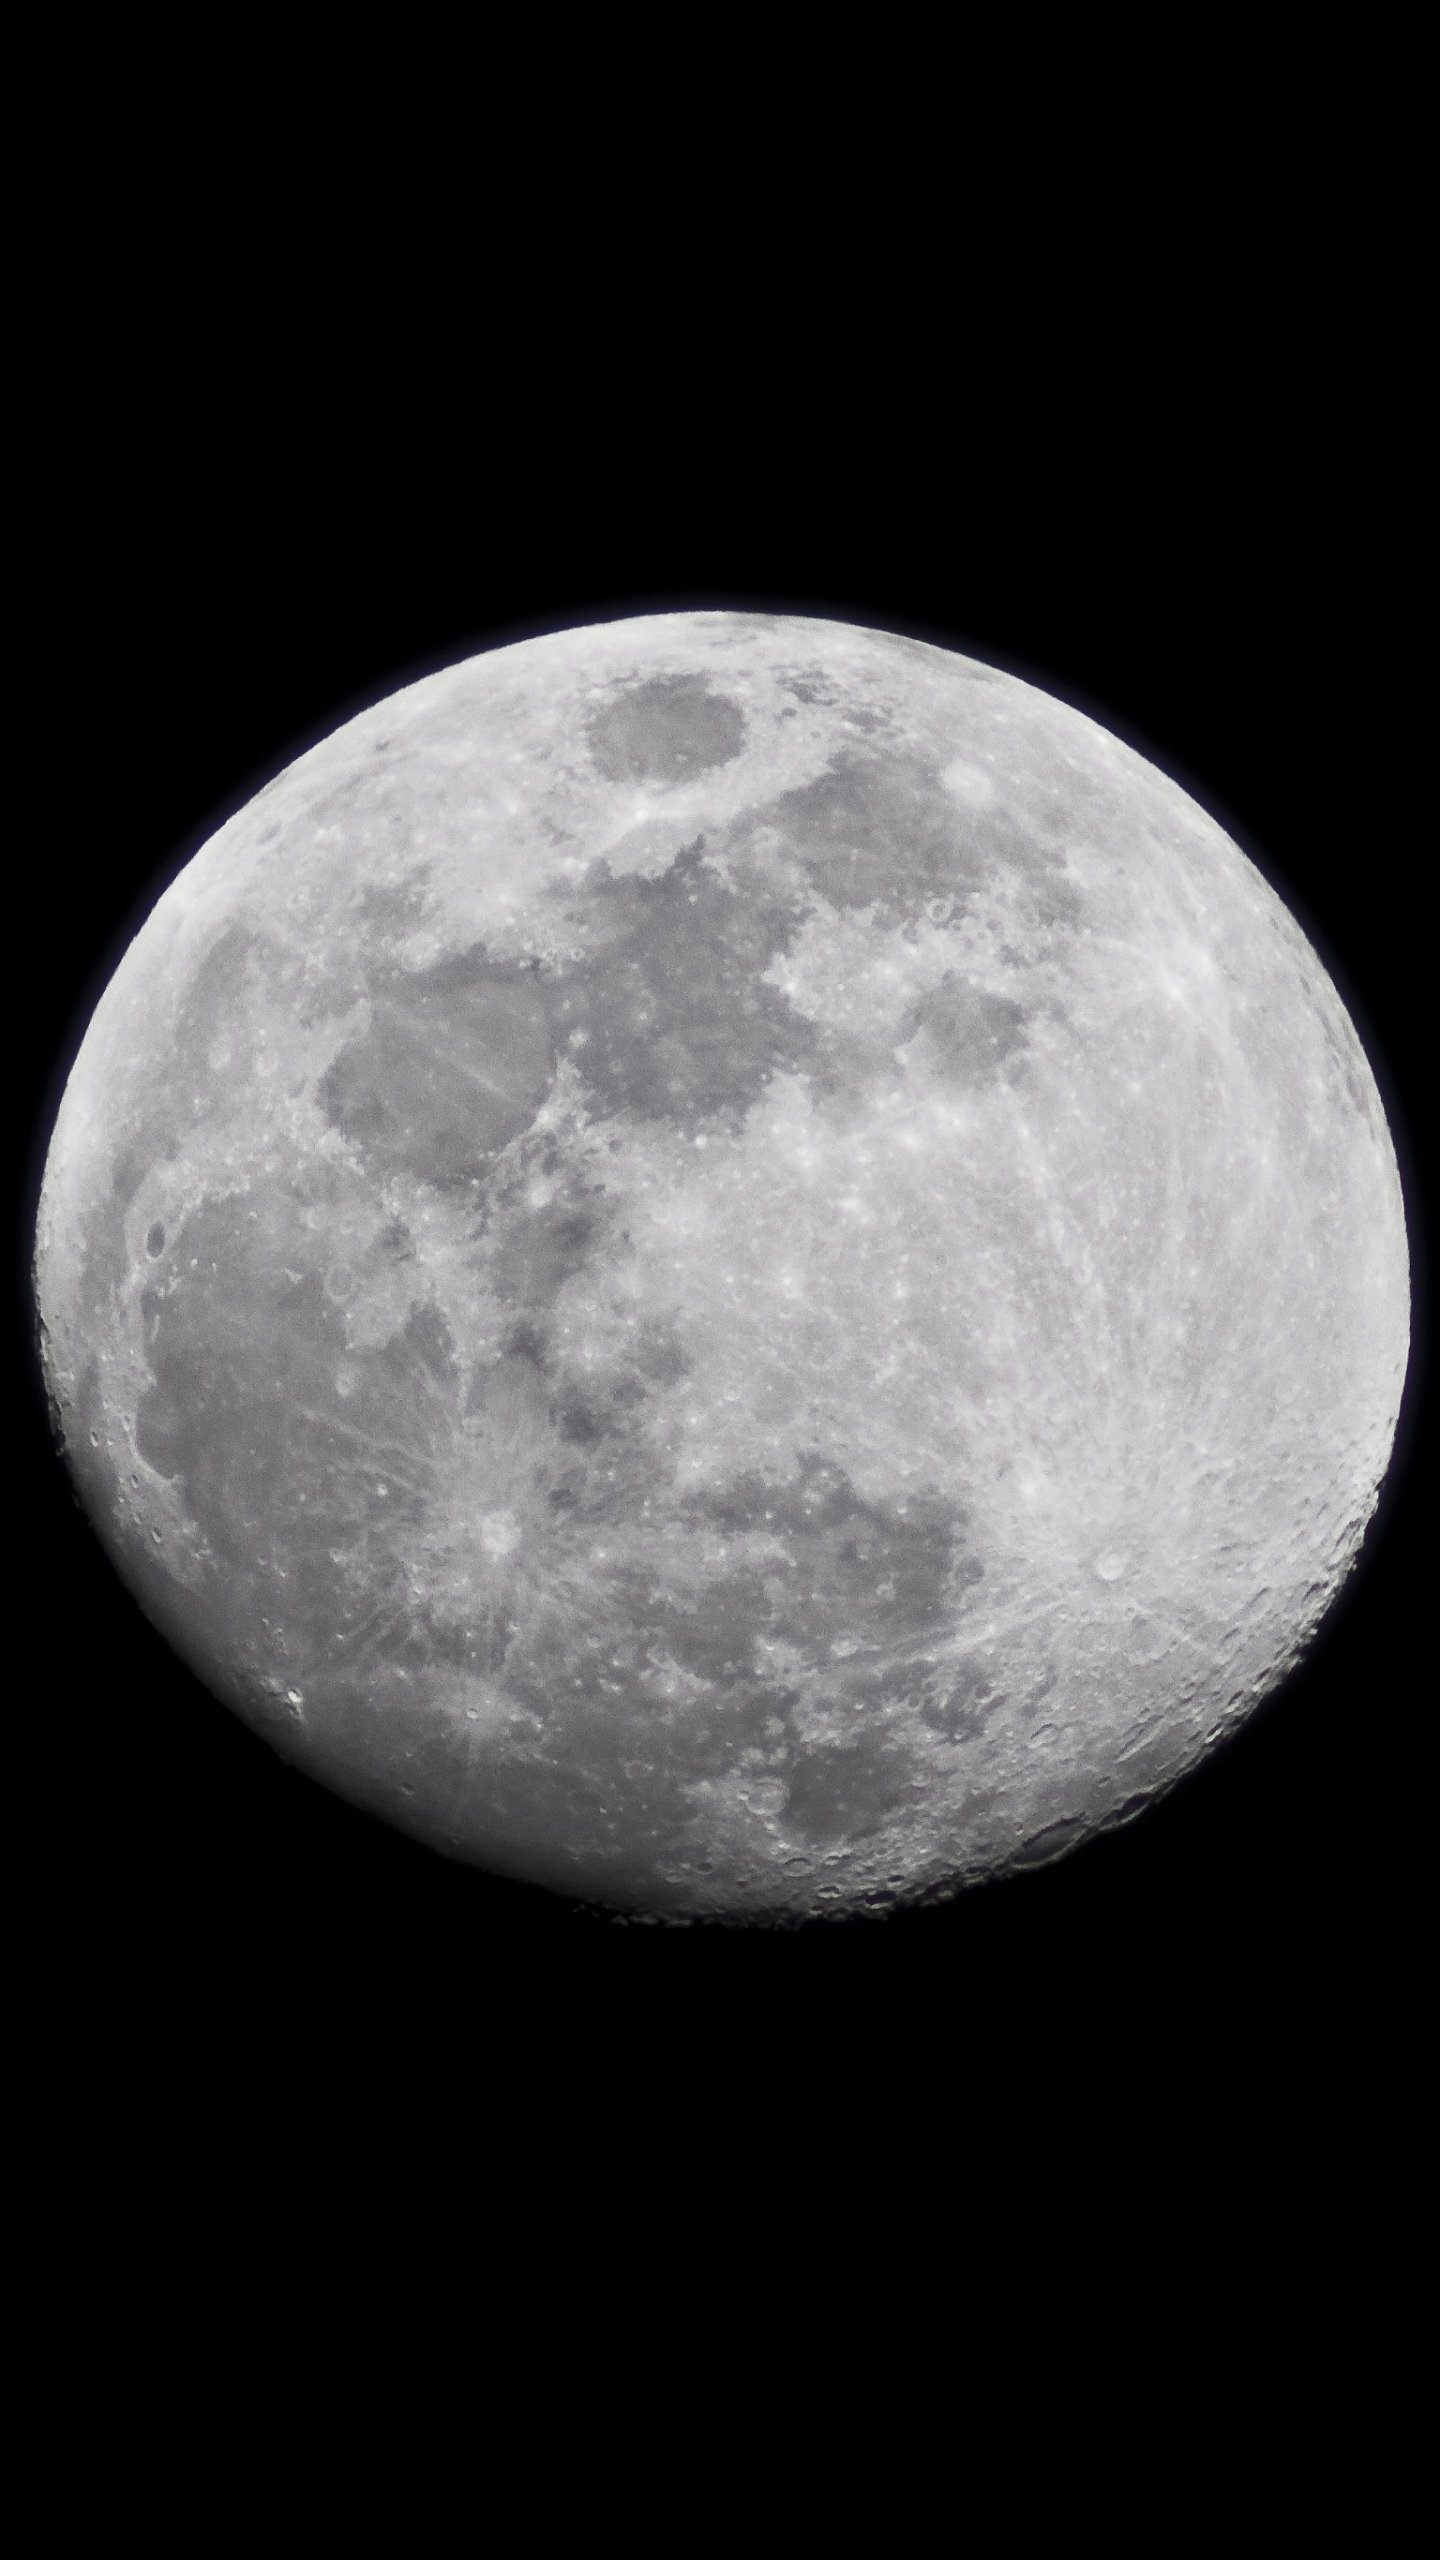 carta da parati luna,luna,fotografia,oggetto astronomico,fotografia in bianco e nero,bianco e nero